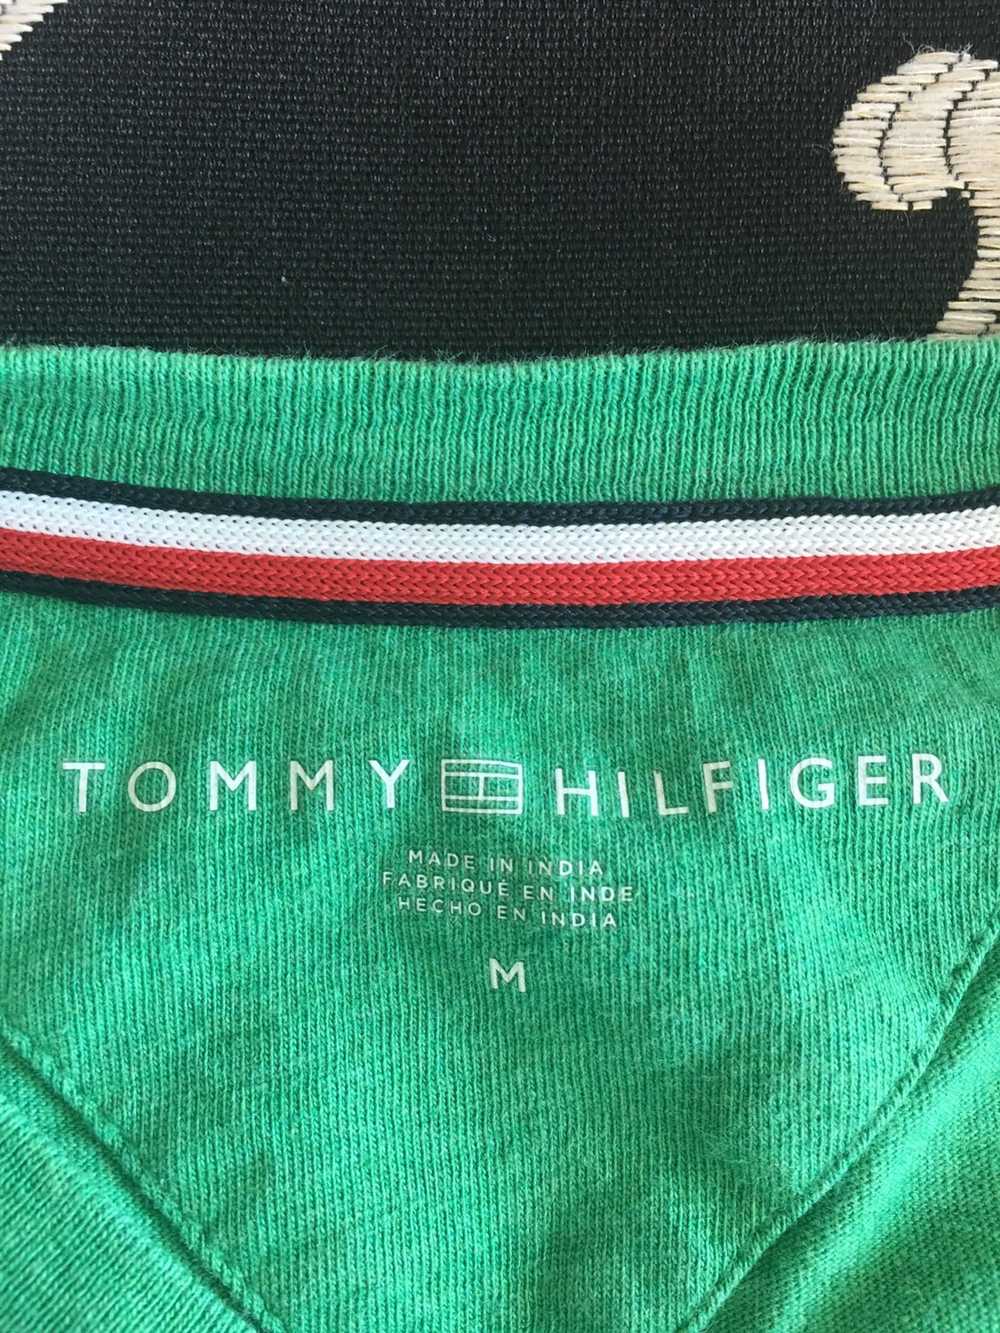 Tommy Hilfiger Tommy Hilfiger T-shirt - image 2